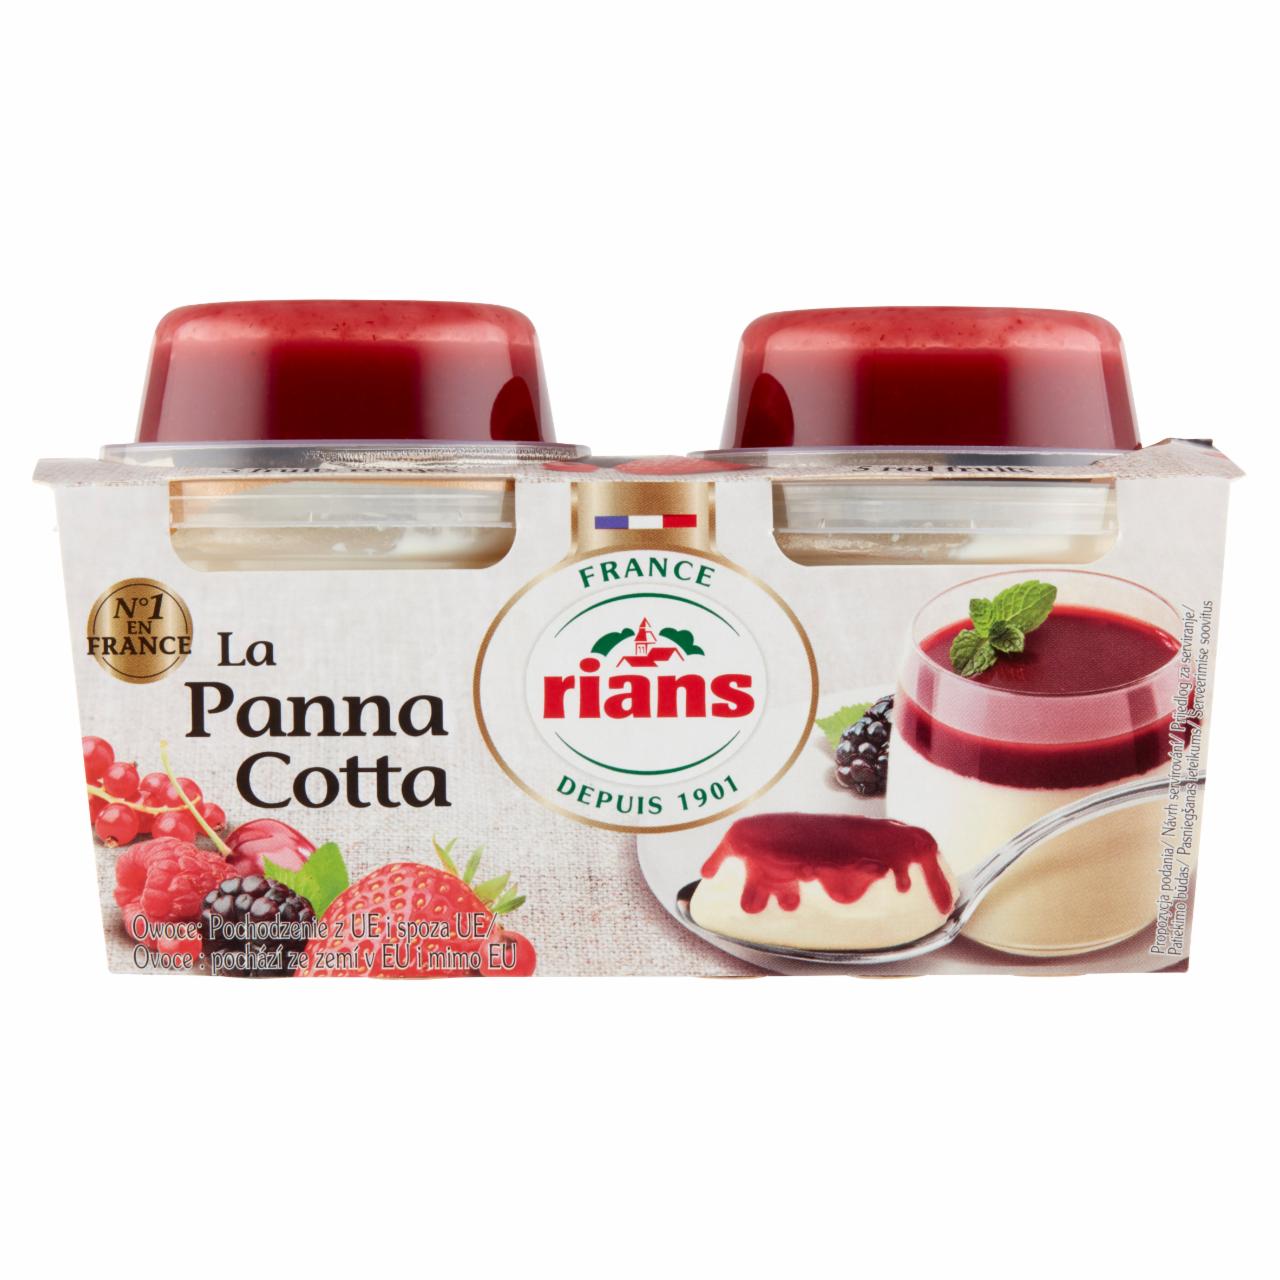 Fotografie - La Panna Cotta Mixed Berries Rians